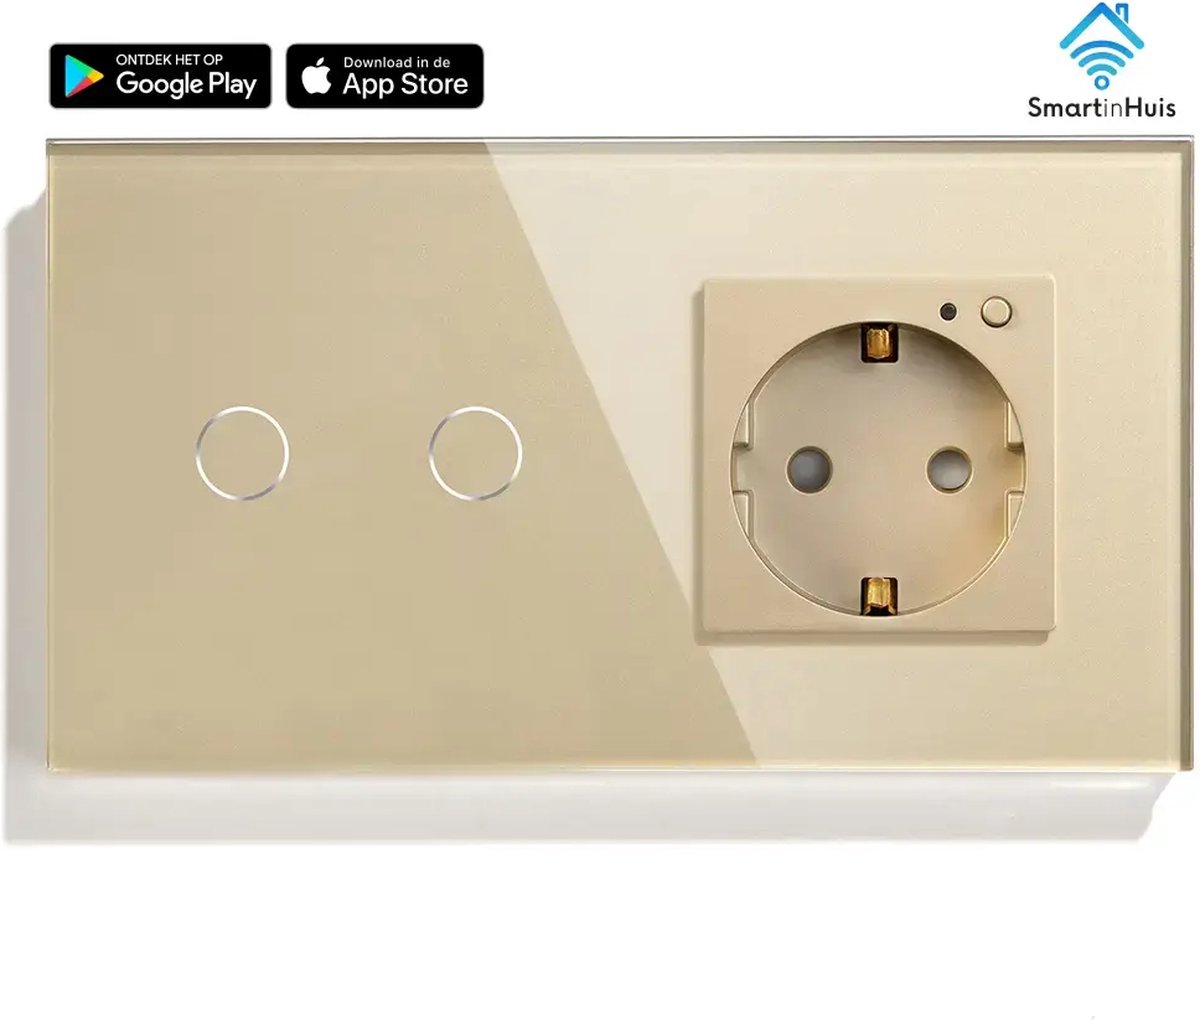 Smart - 2x1 polig met stopcontact (energiemonitoring) - Goud